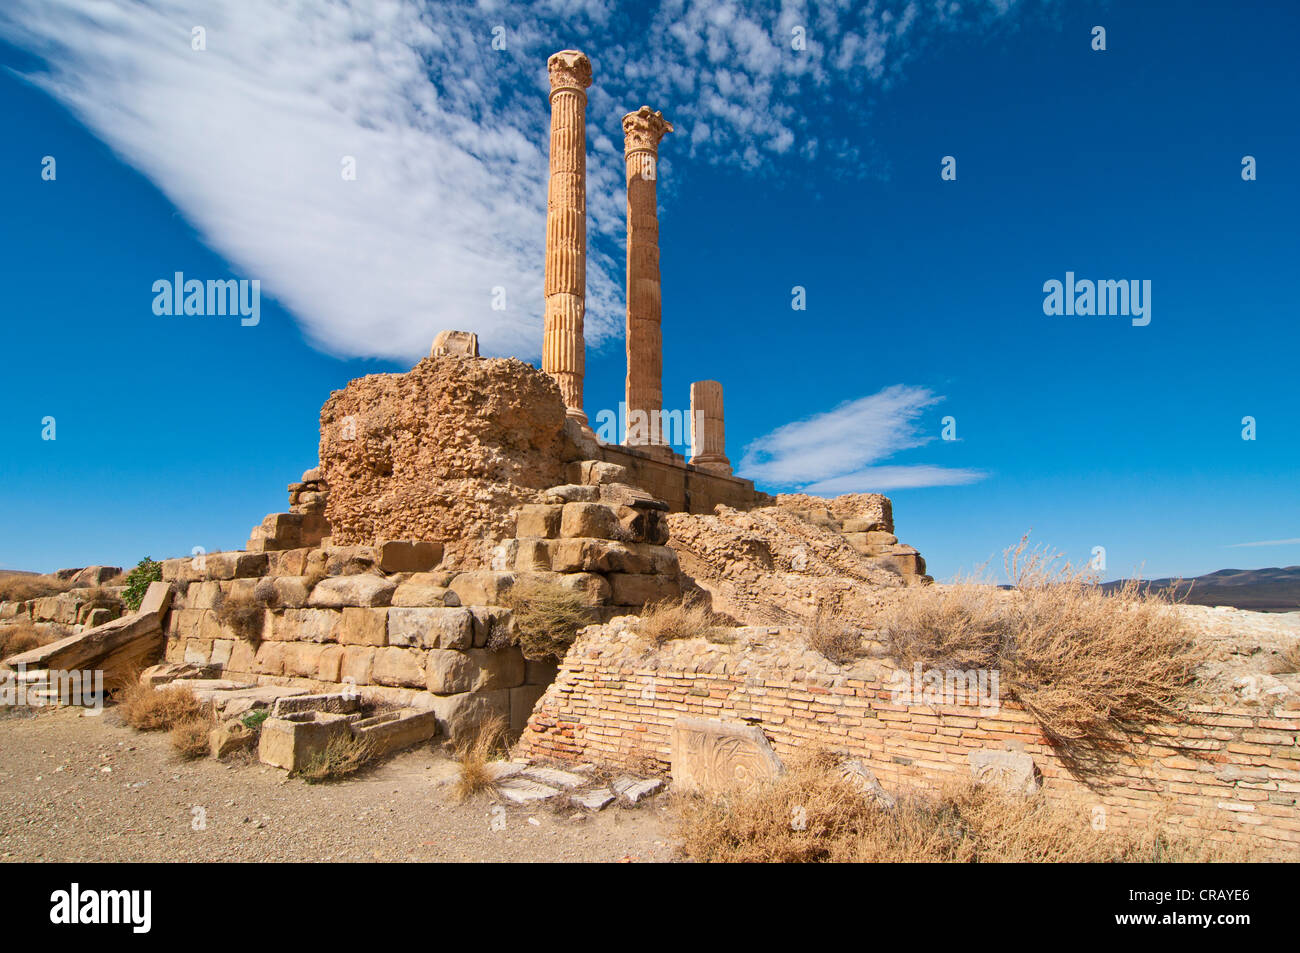 Les ruines romaines de Timgad, Site du patrimoine mondial de l'UNESCO, l'Algérie, l'Afrique Banque D'Images